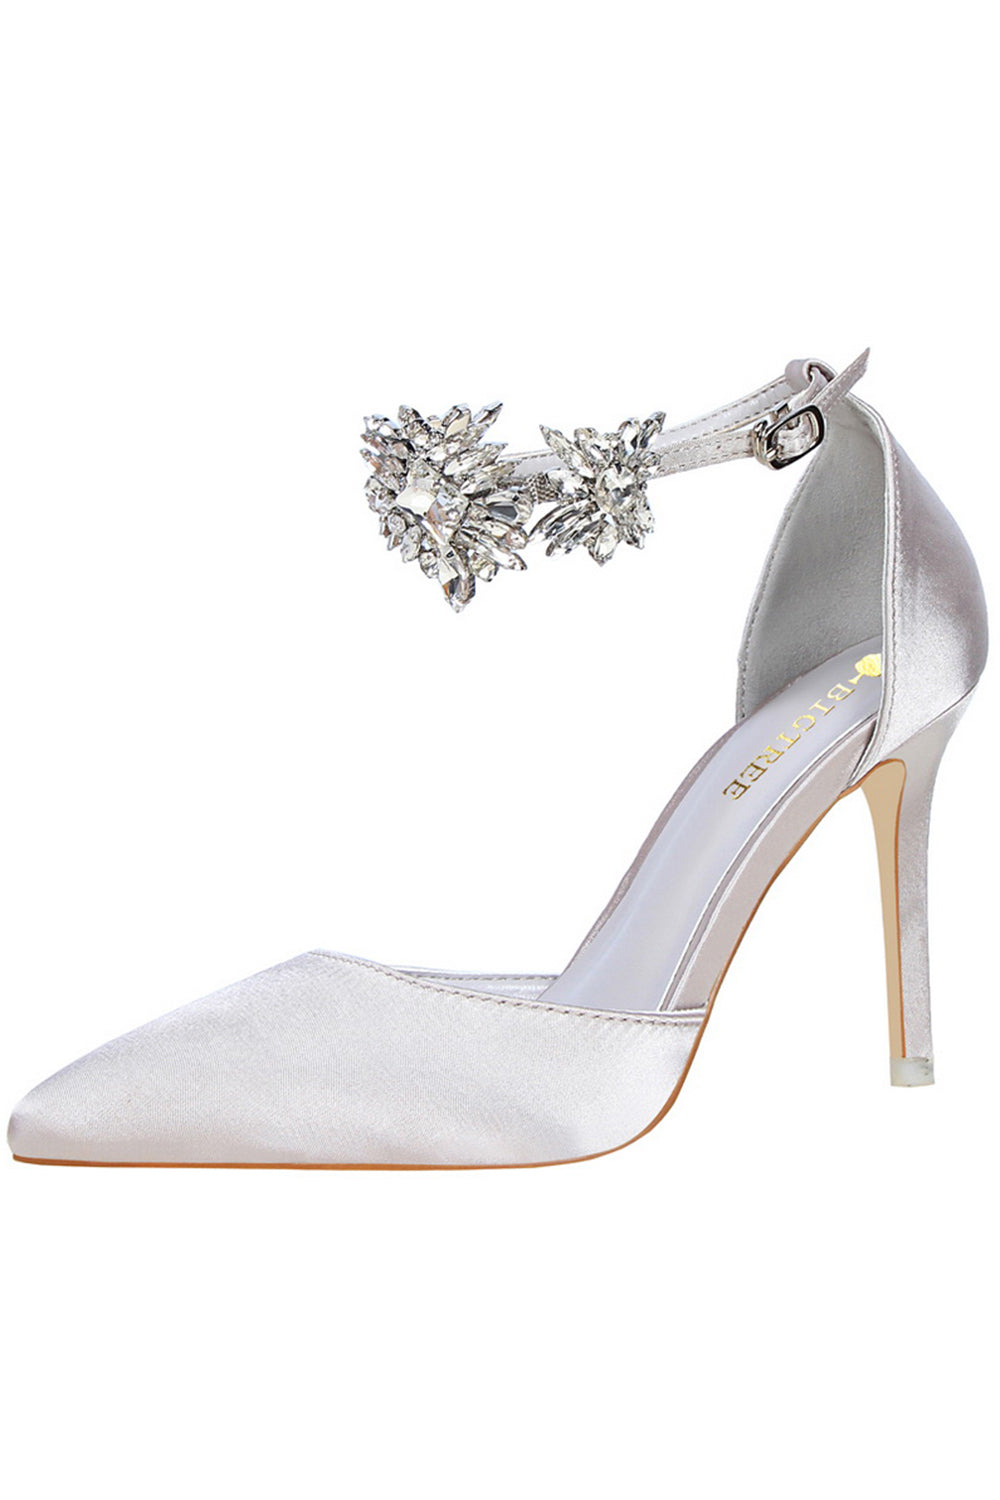 Badgley Mischka Feisty Pearl Block Heels | Bridal shoes, Wedding shoes  block heel, Wedding heels